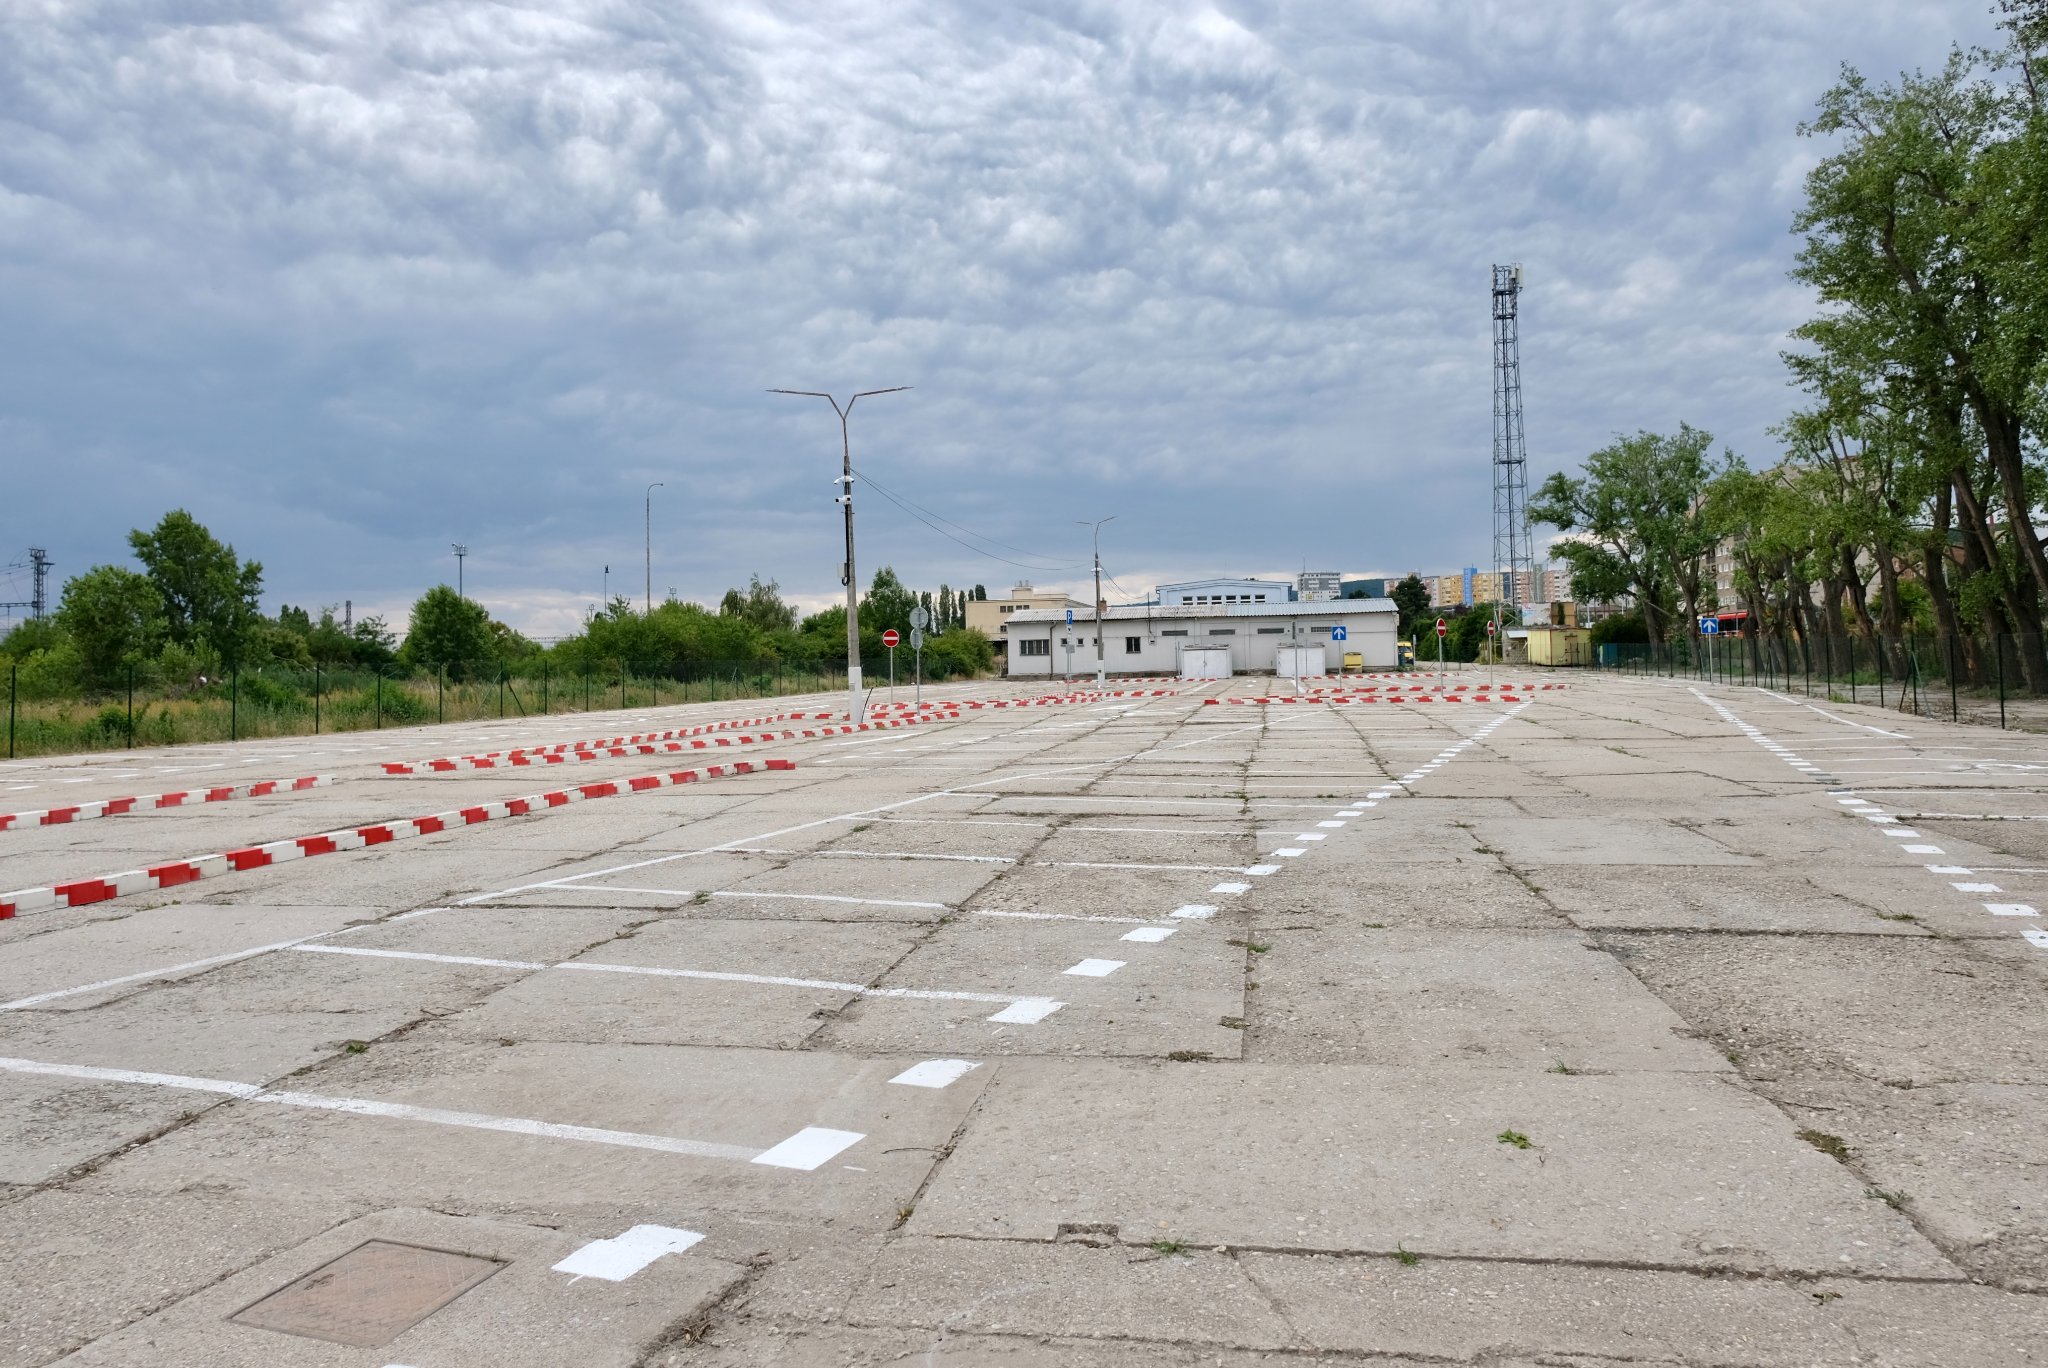 Aj takto vyzerá nové parkovisko. Pozor na nerovnosti. (Zdroj: Fb, Bratislava - hl. mesto)